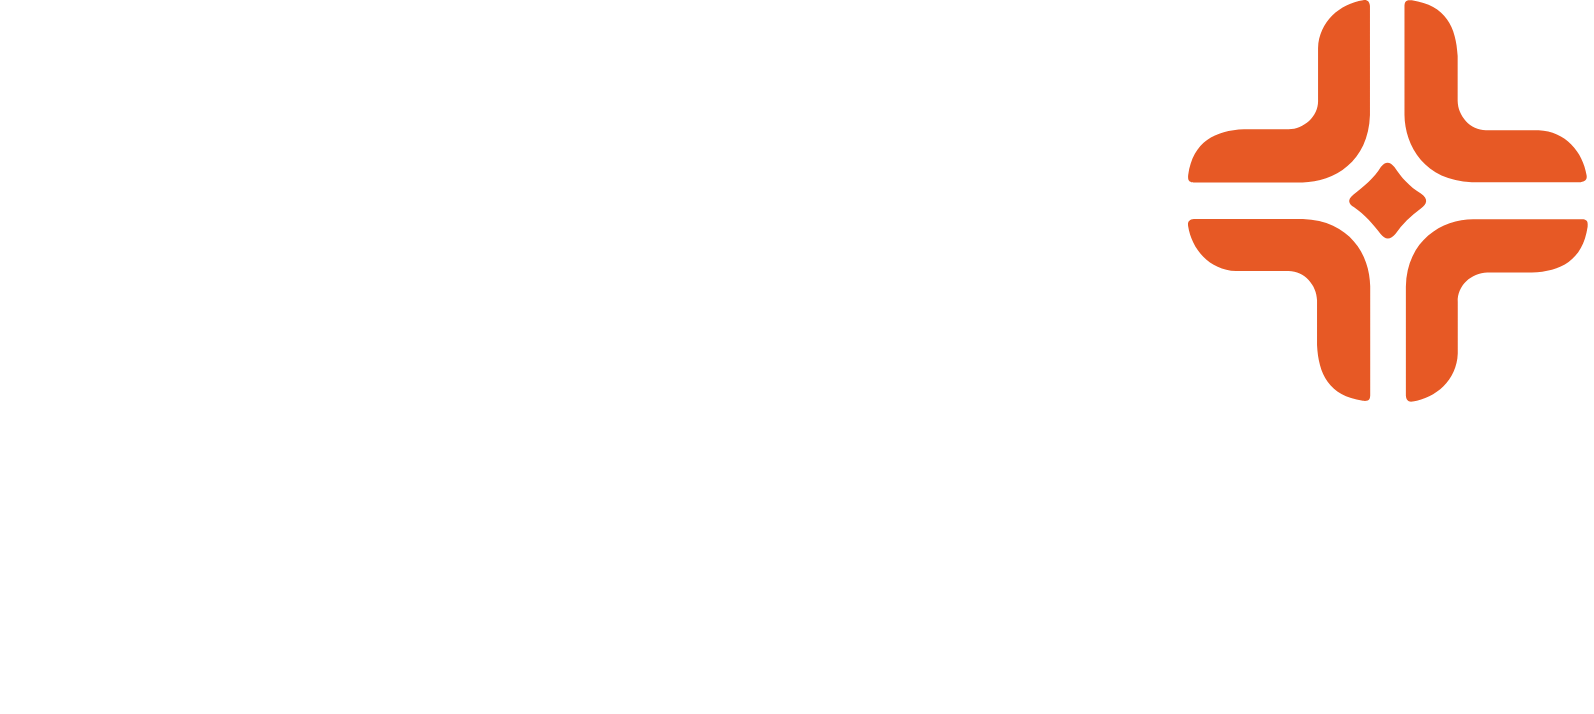 HCA Healthcare logo large for dark backgrounds (transparent PNG)